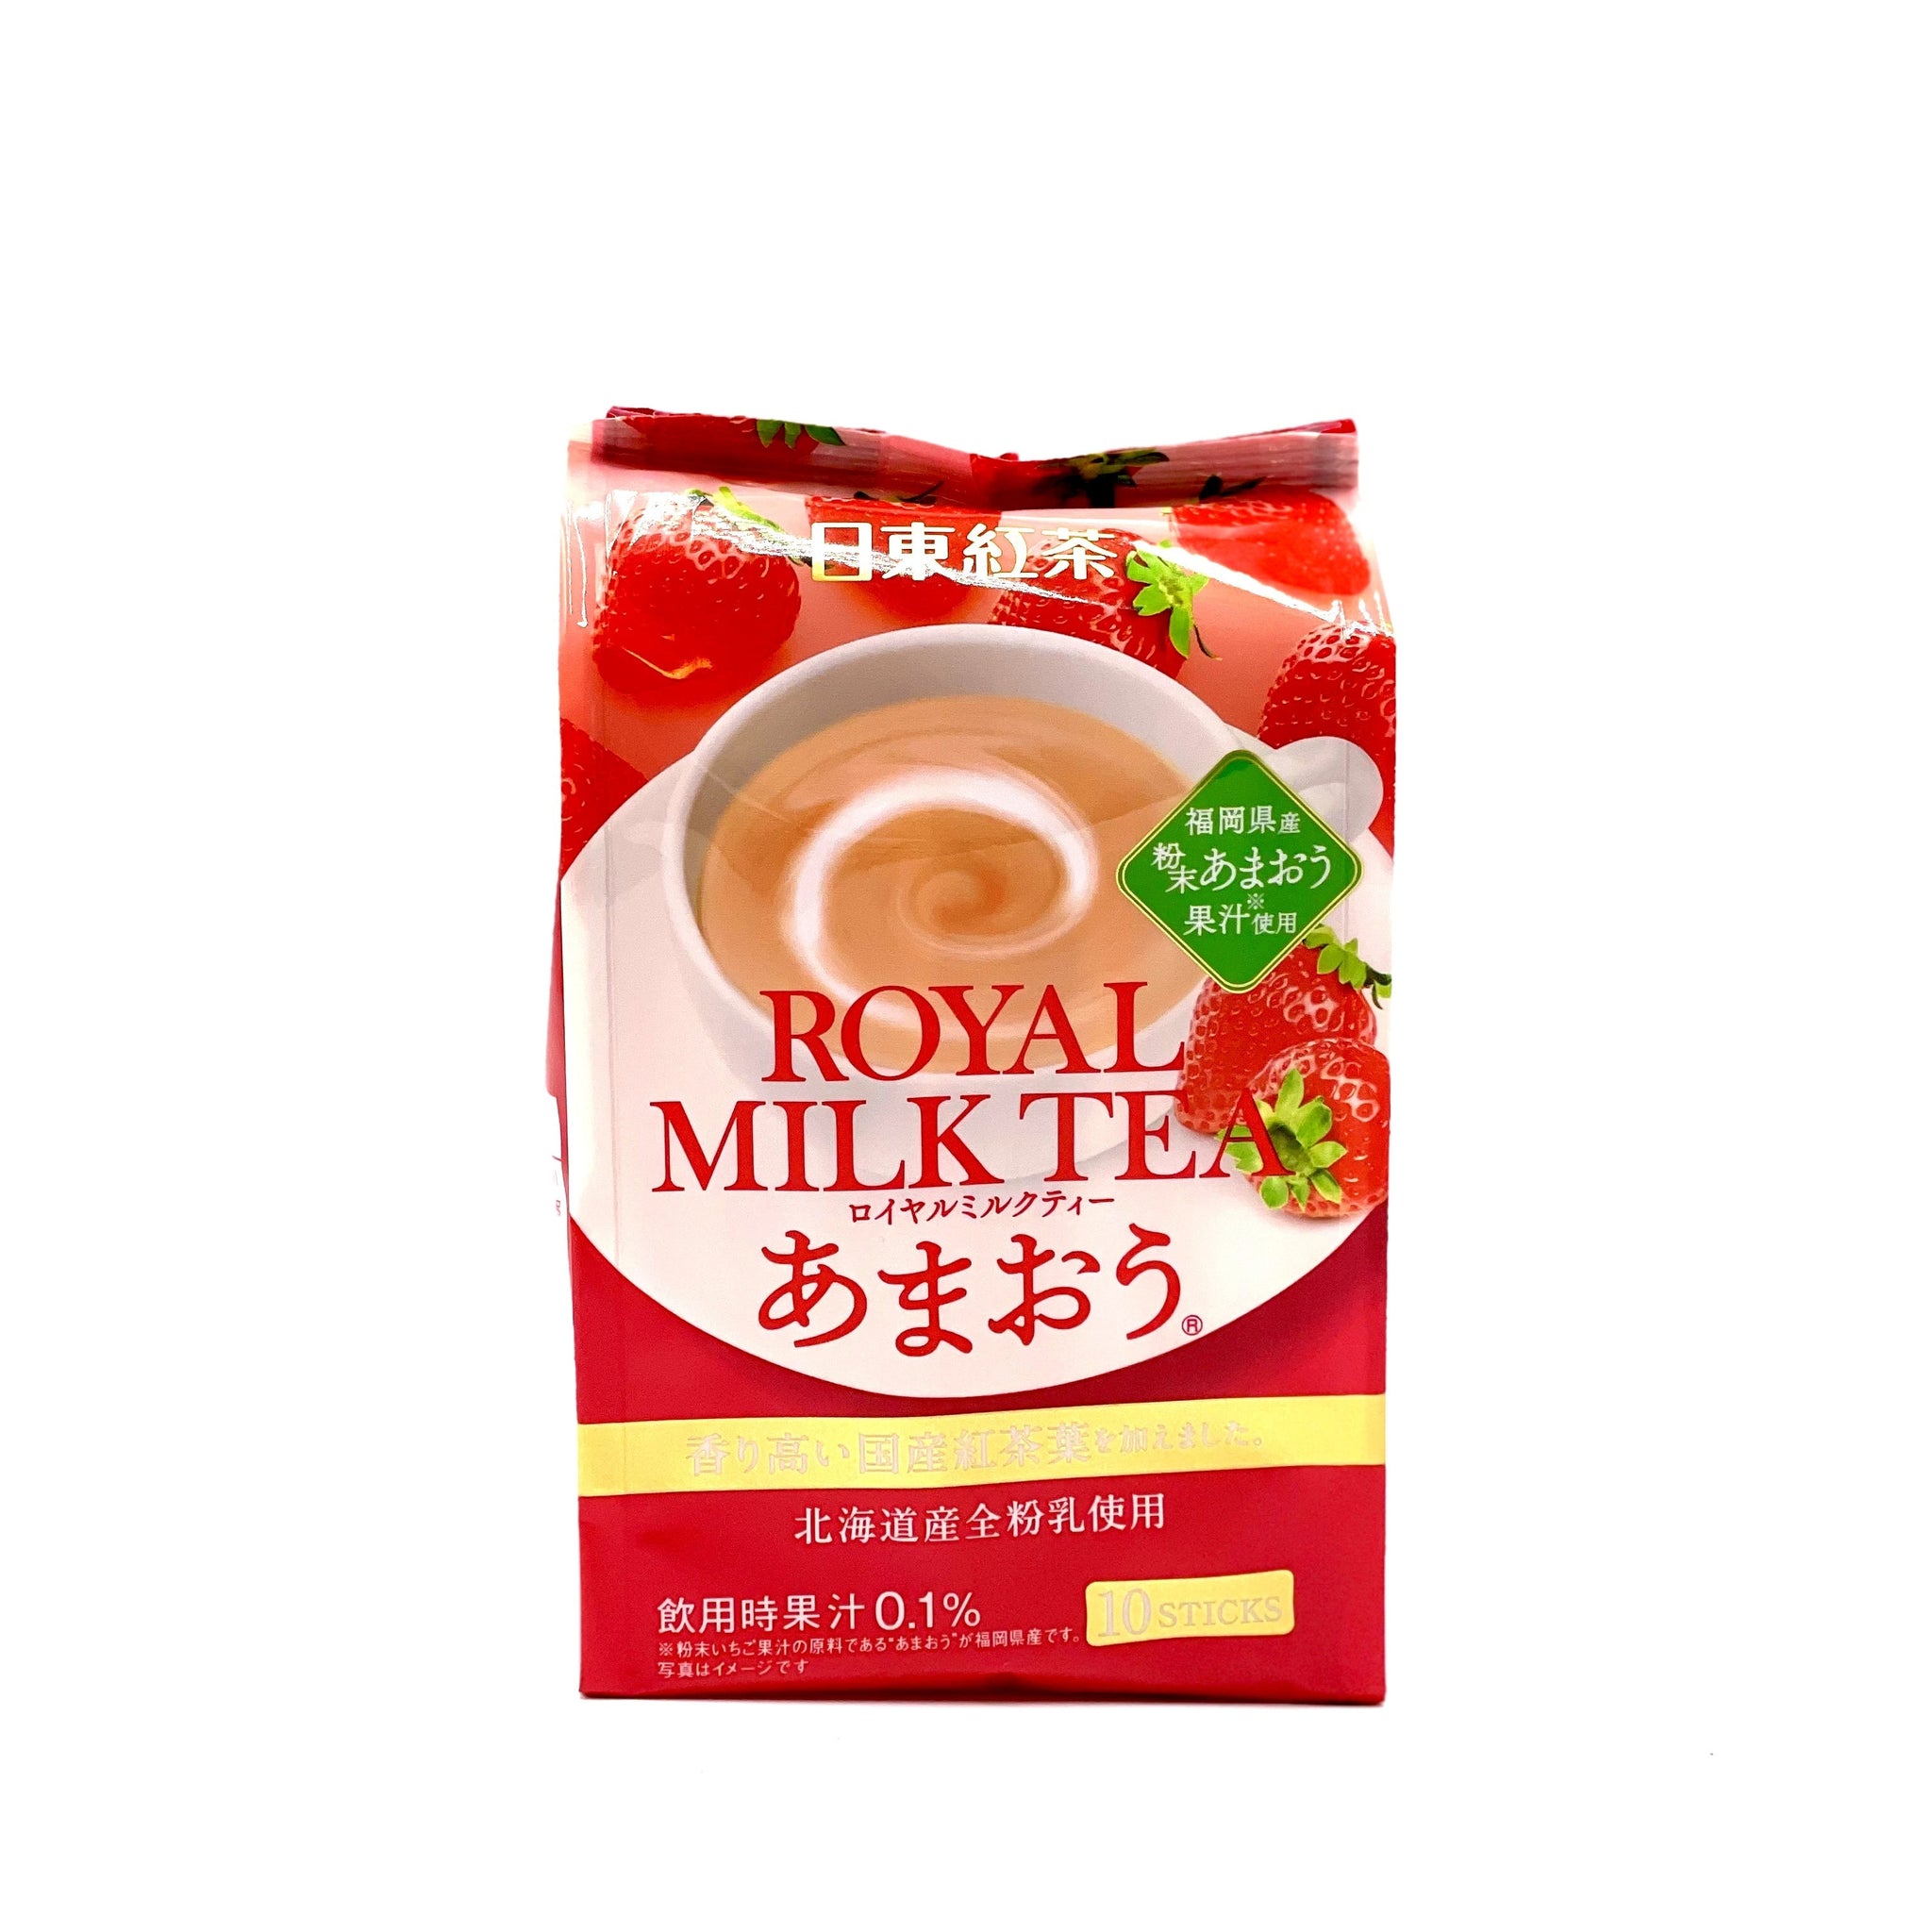 日东红茶奶茶草莓味 NITTO Royal Milk Tea Strawberry Flavor 140g